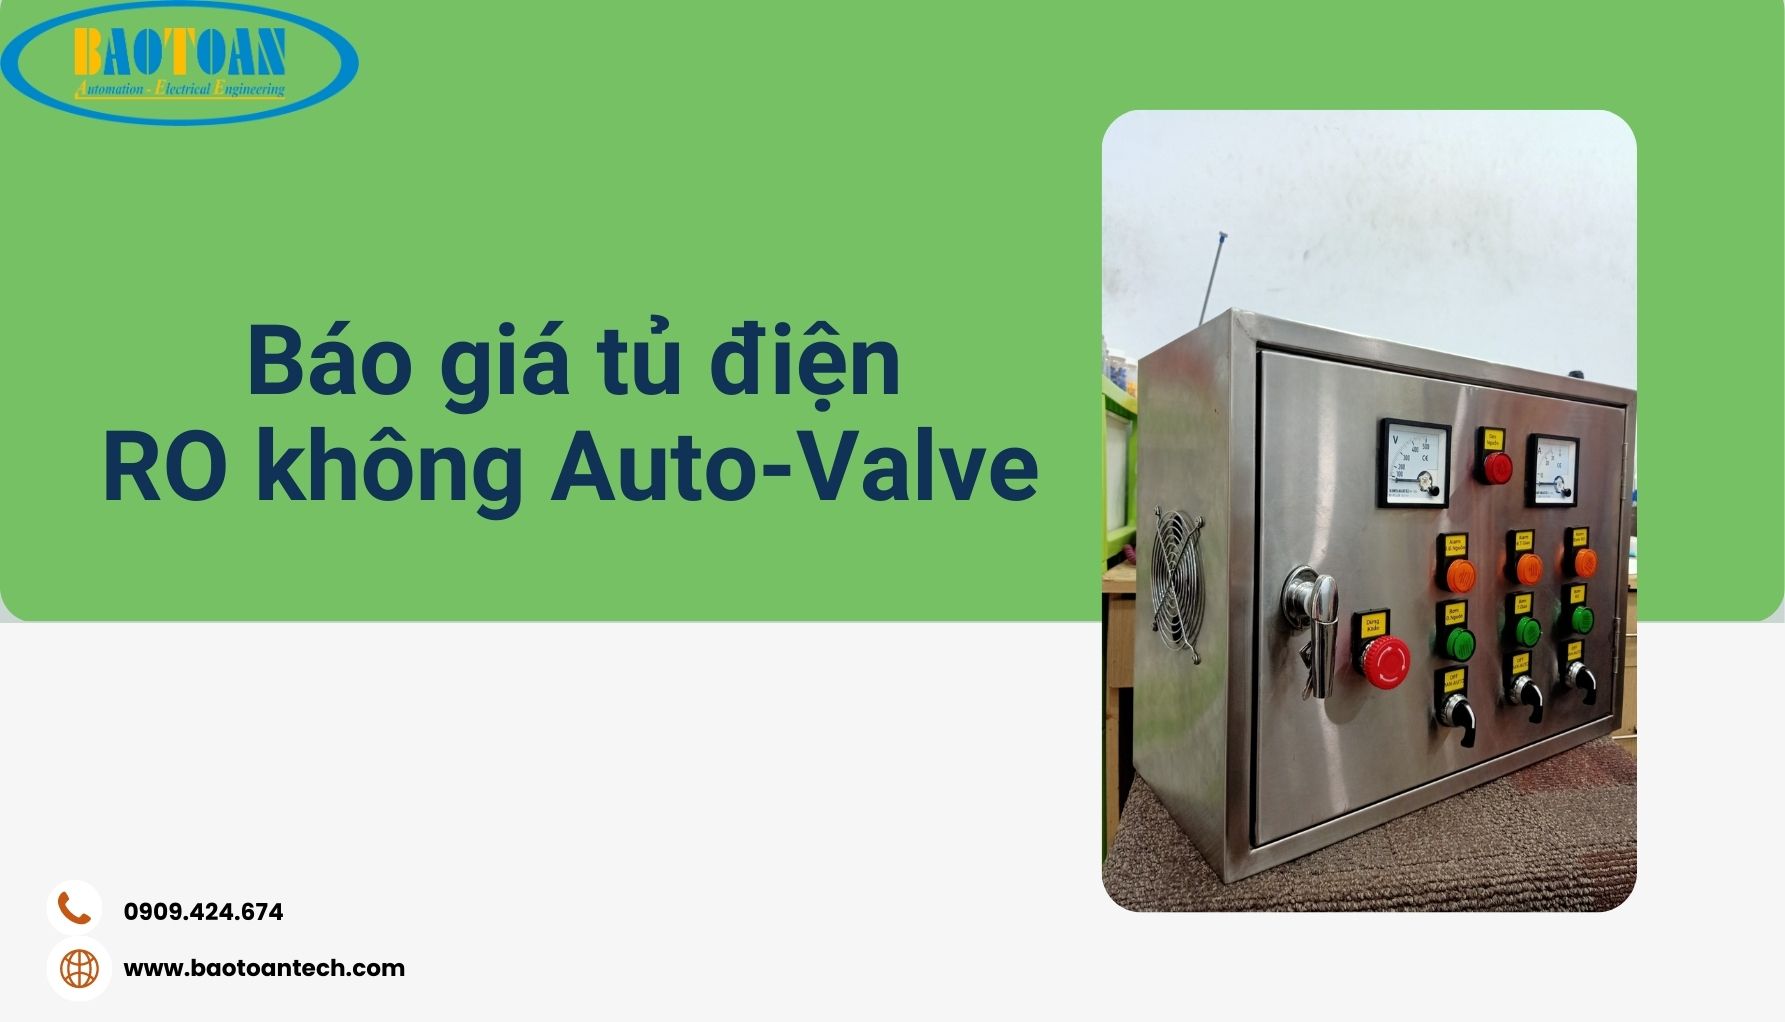 Tủ điện RO không sử dụng Auto-Valve